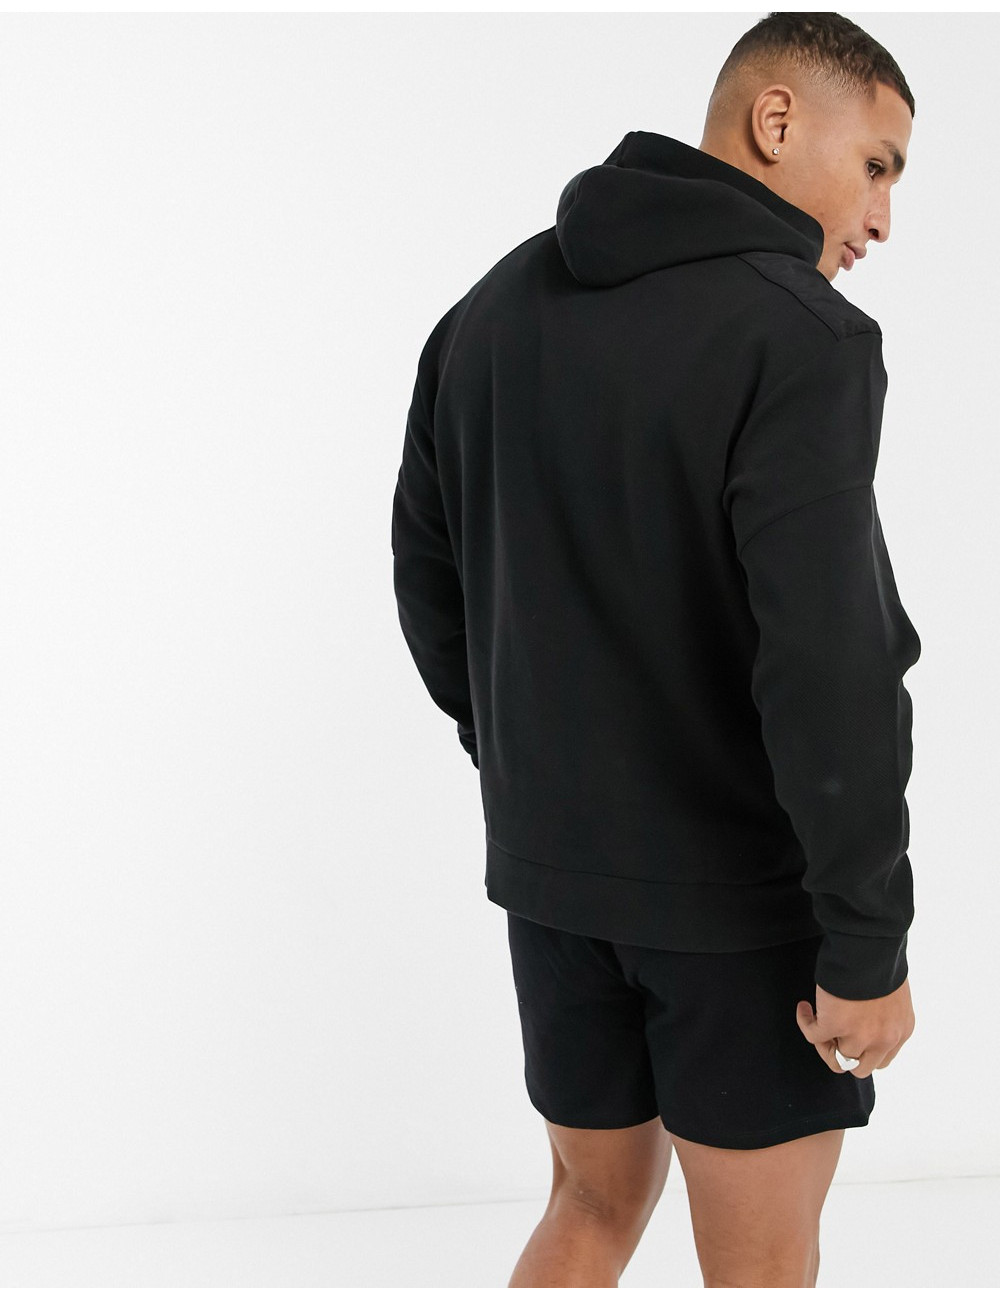 Puma nutility hoodie in black